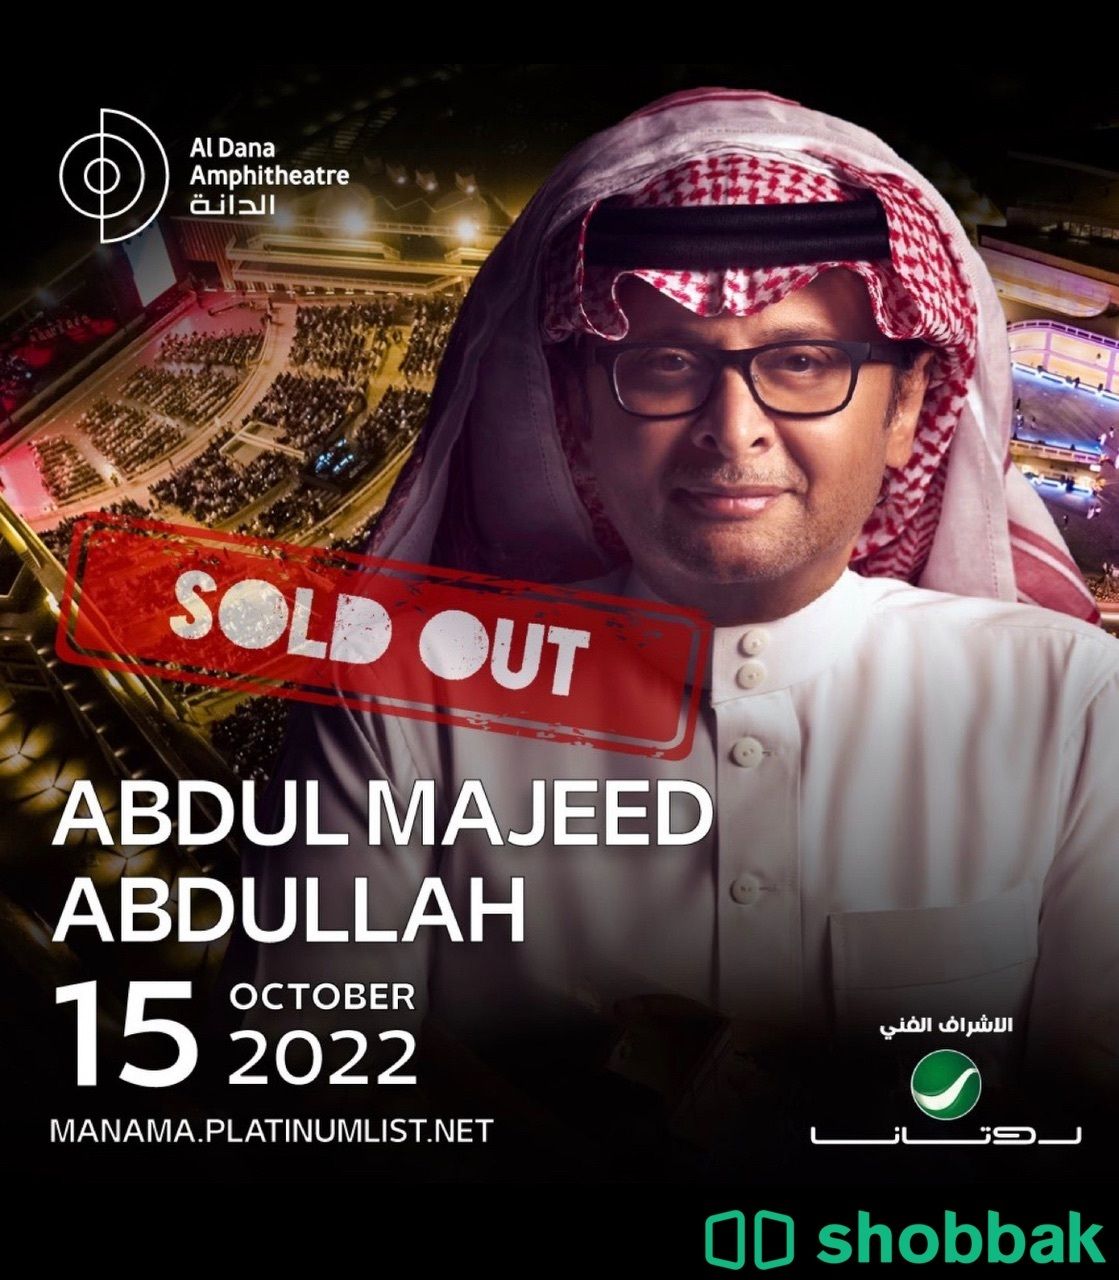 تذكرة لحفلة عبدالمجيد في البحرين 15 اكتوبر Shobbak Saudi Arabia